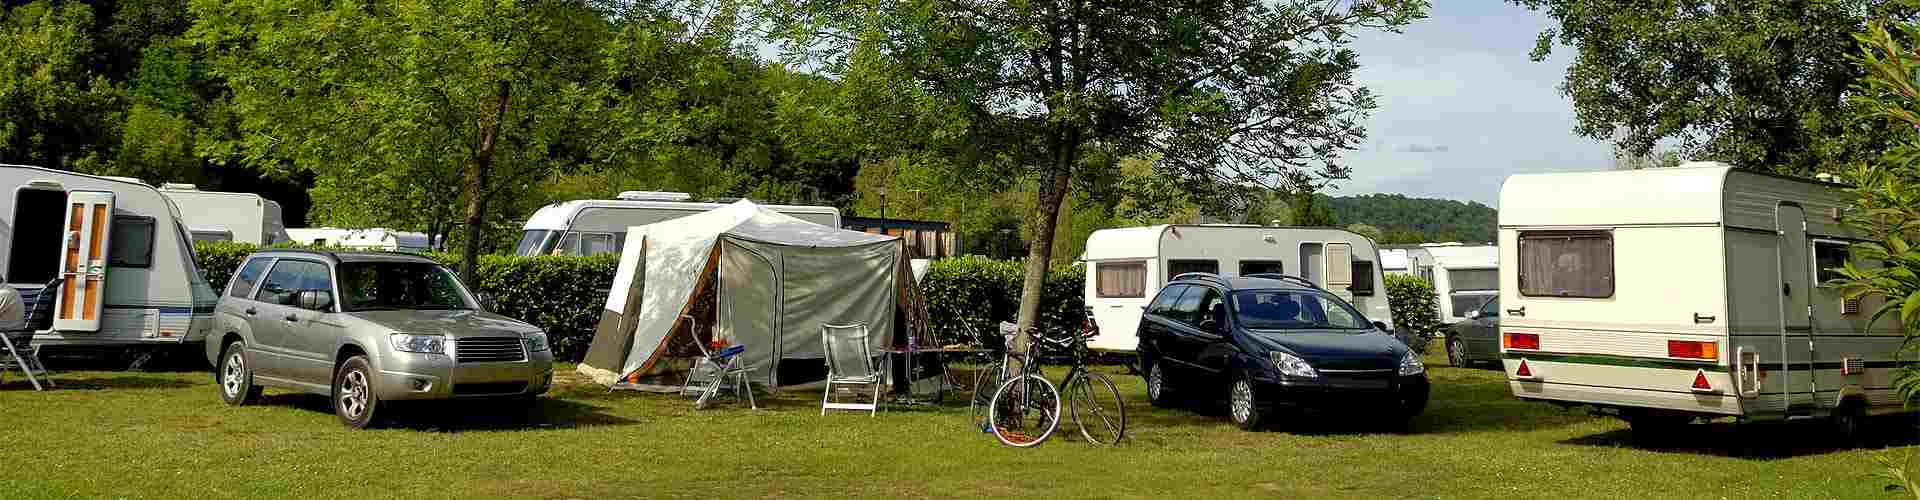 Campings y bungalows en Barreda
           
           


          
          
          


